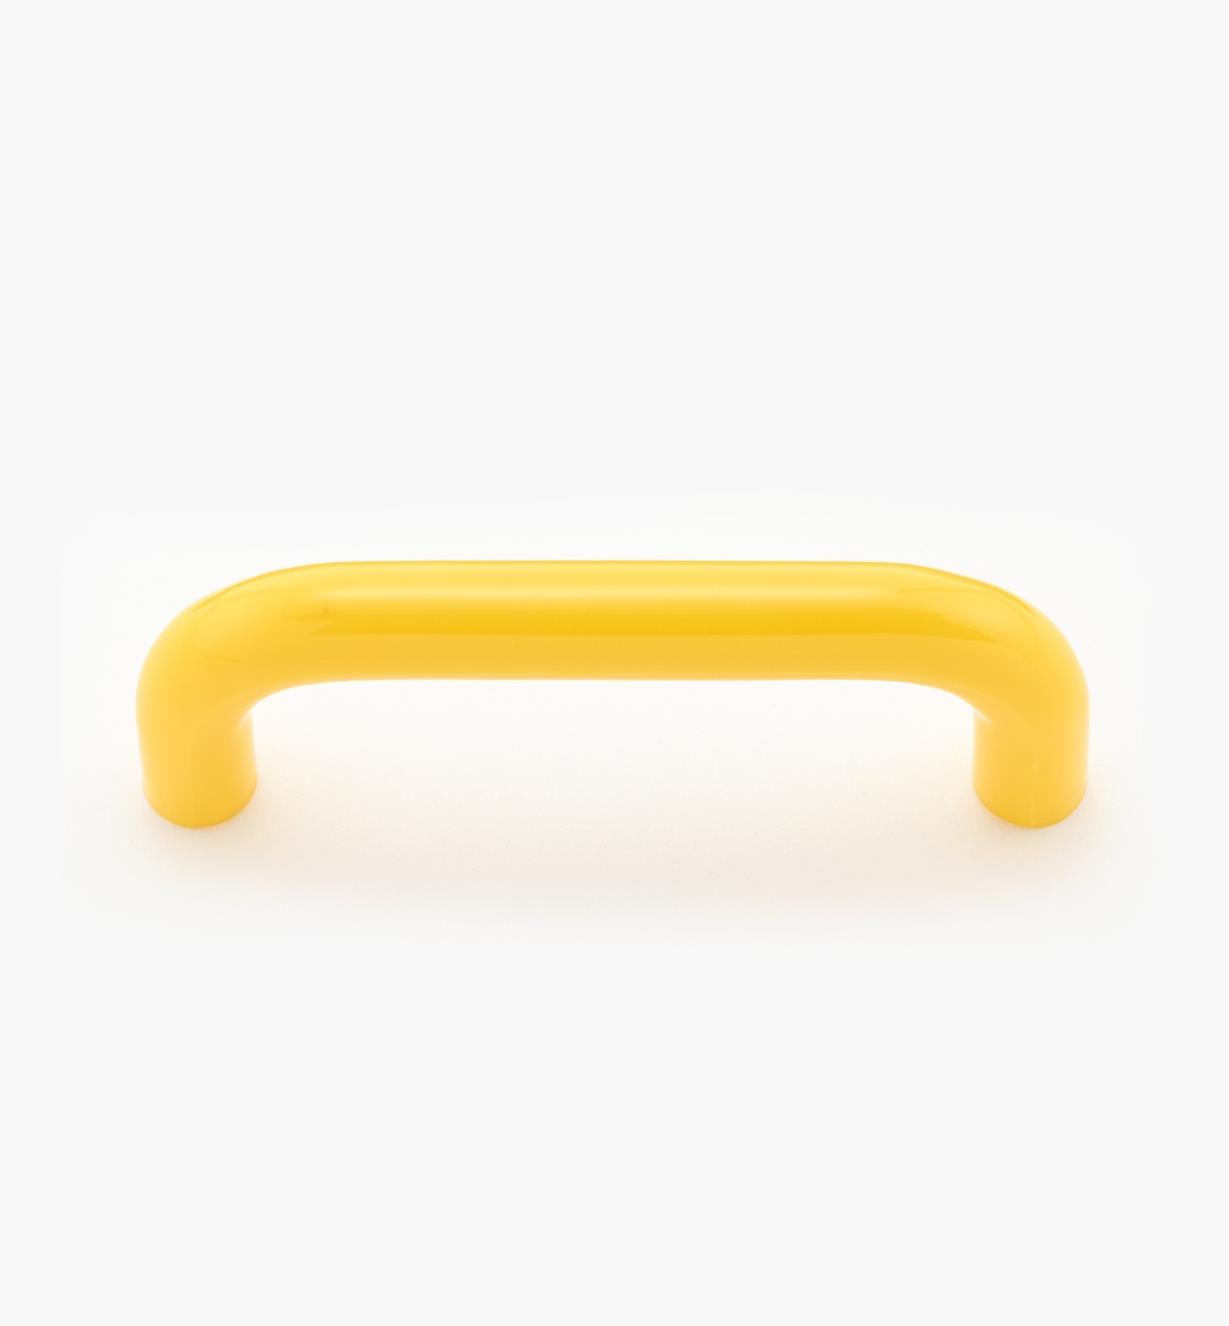 00W3913 - Petite poignée-fil en plastique, jaune, 2 7/8 po